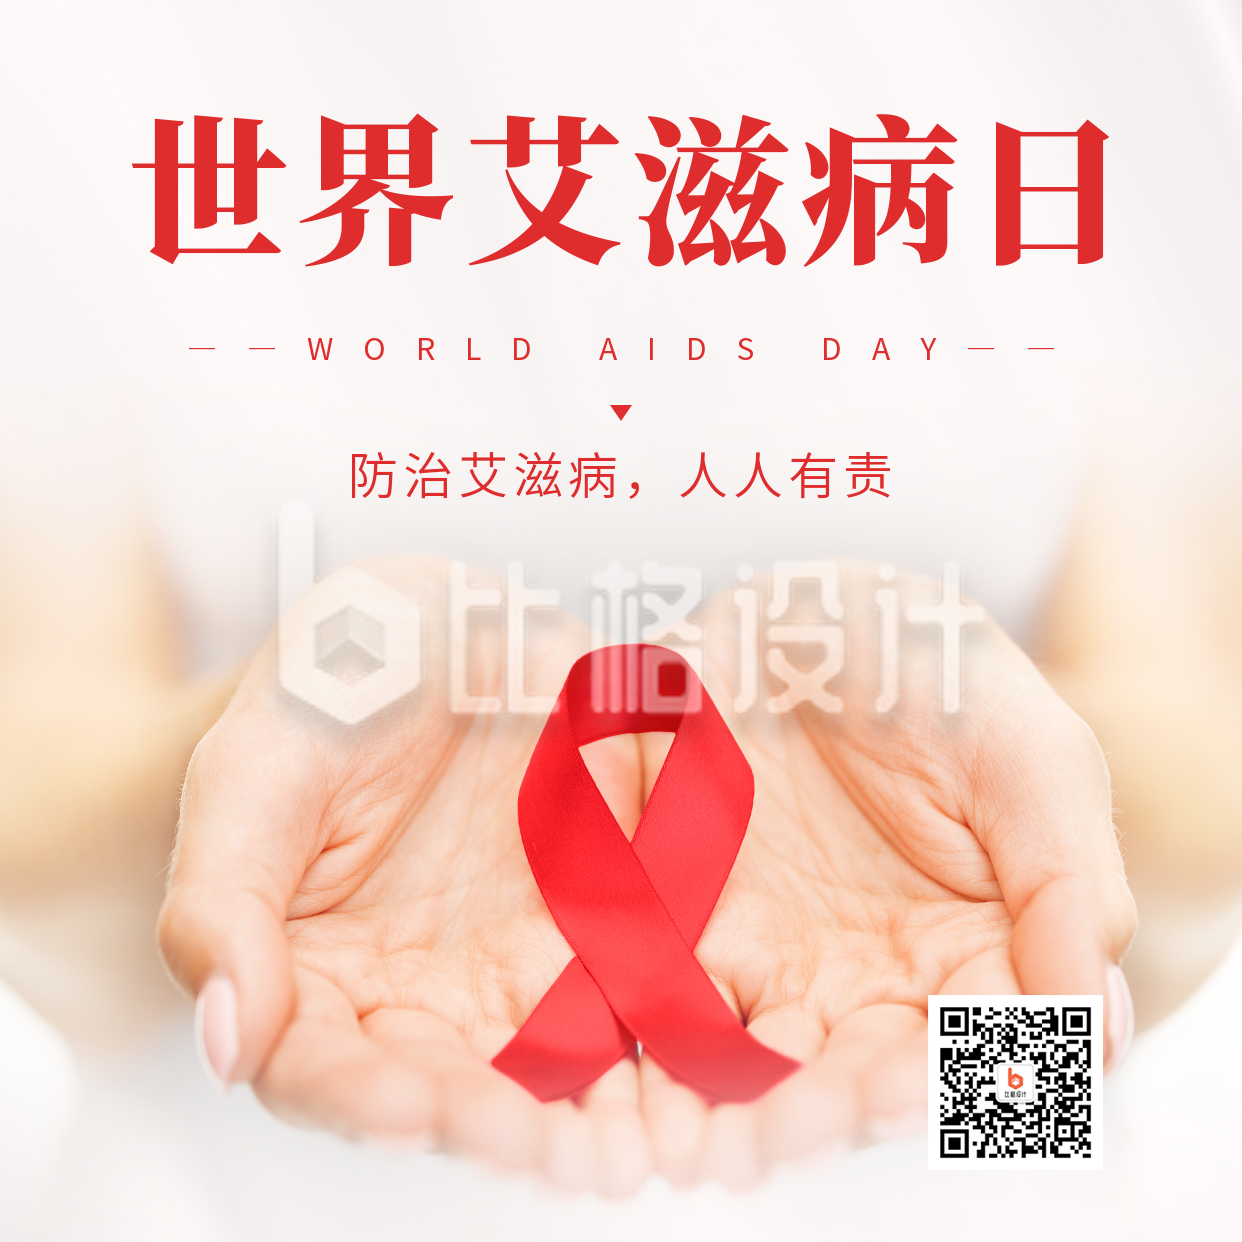 世界艾滋病日宣传方形海报